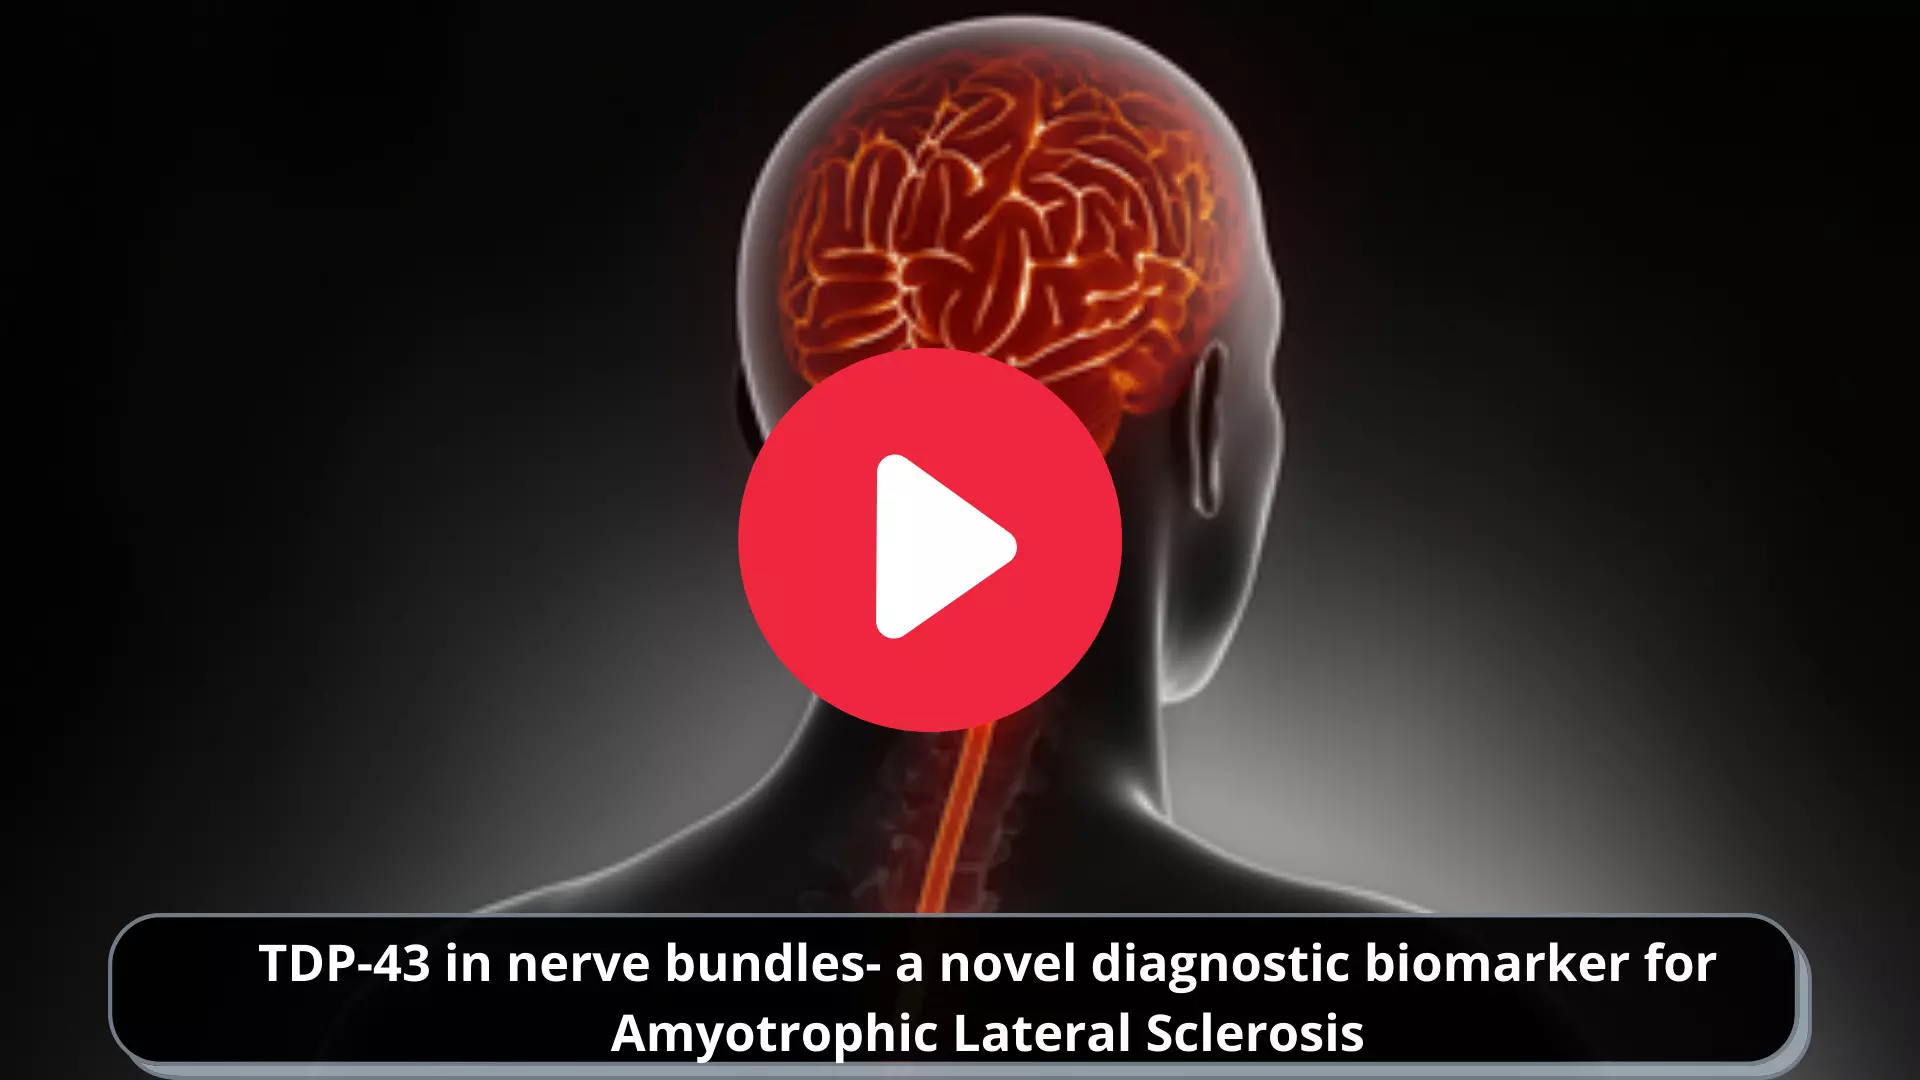 TDP-43 in nerve bundles- a novel diagnostic biomarker for Amyotrophic Lateral Sclerosis